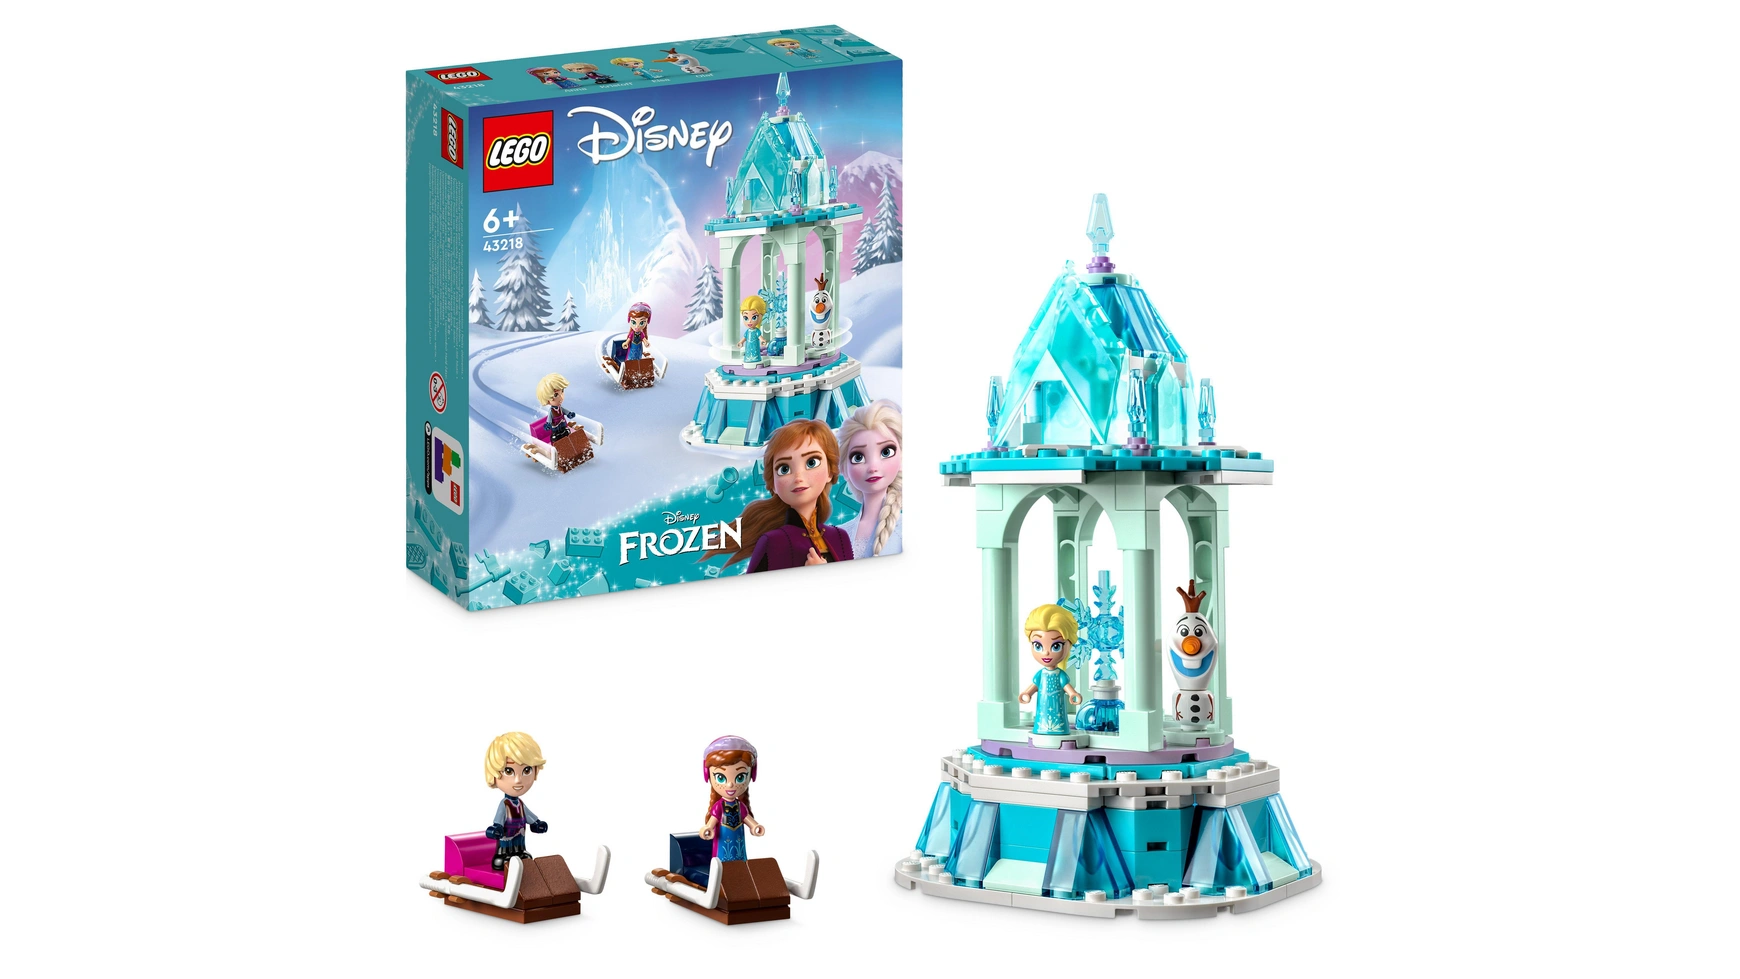 Lego Disney Princess Волшебная карусель Анны и Эльзы 1 шт лот украшения для торта принцессы эльзы анны